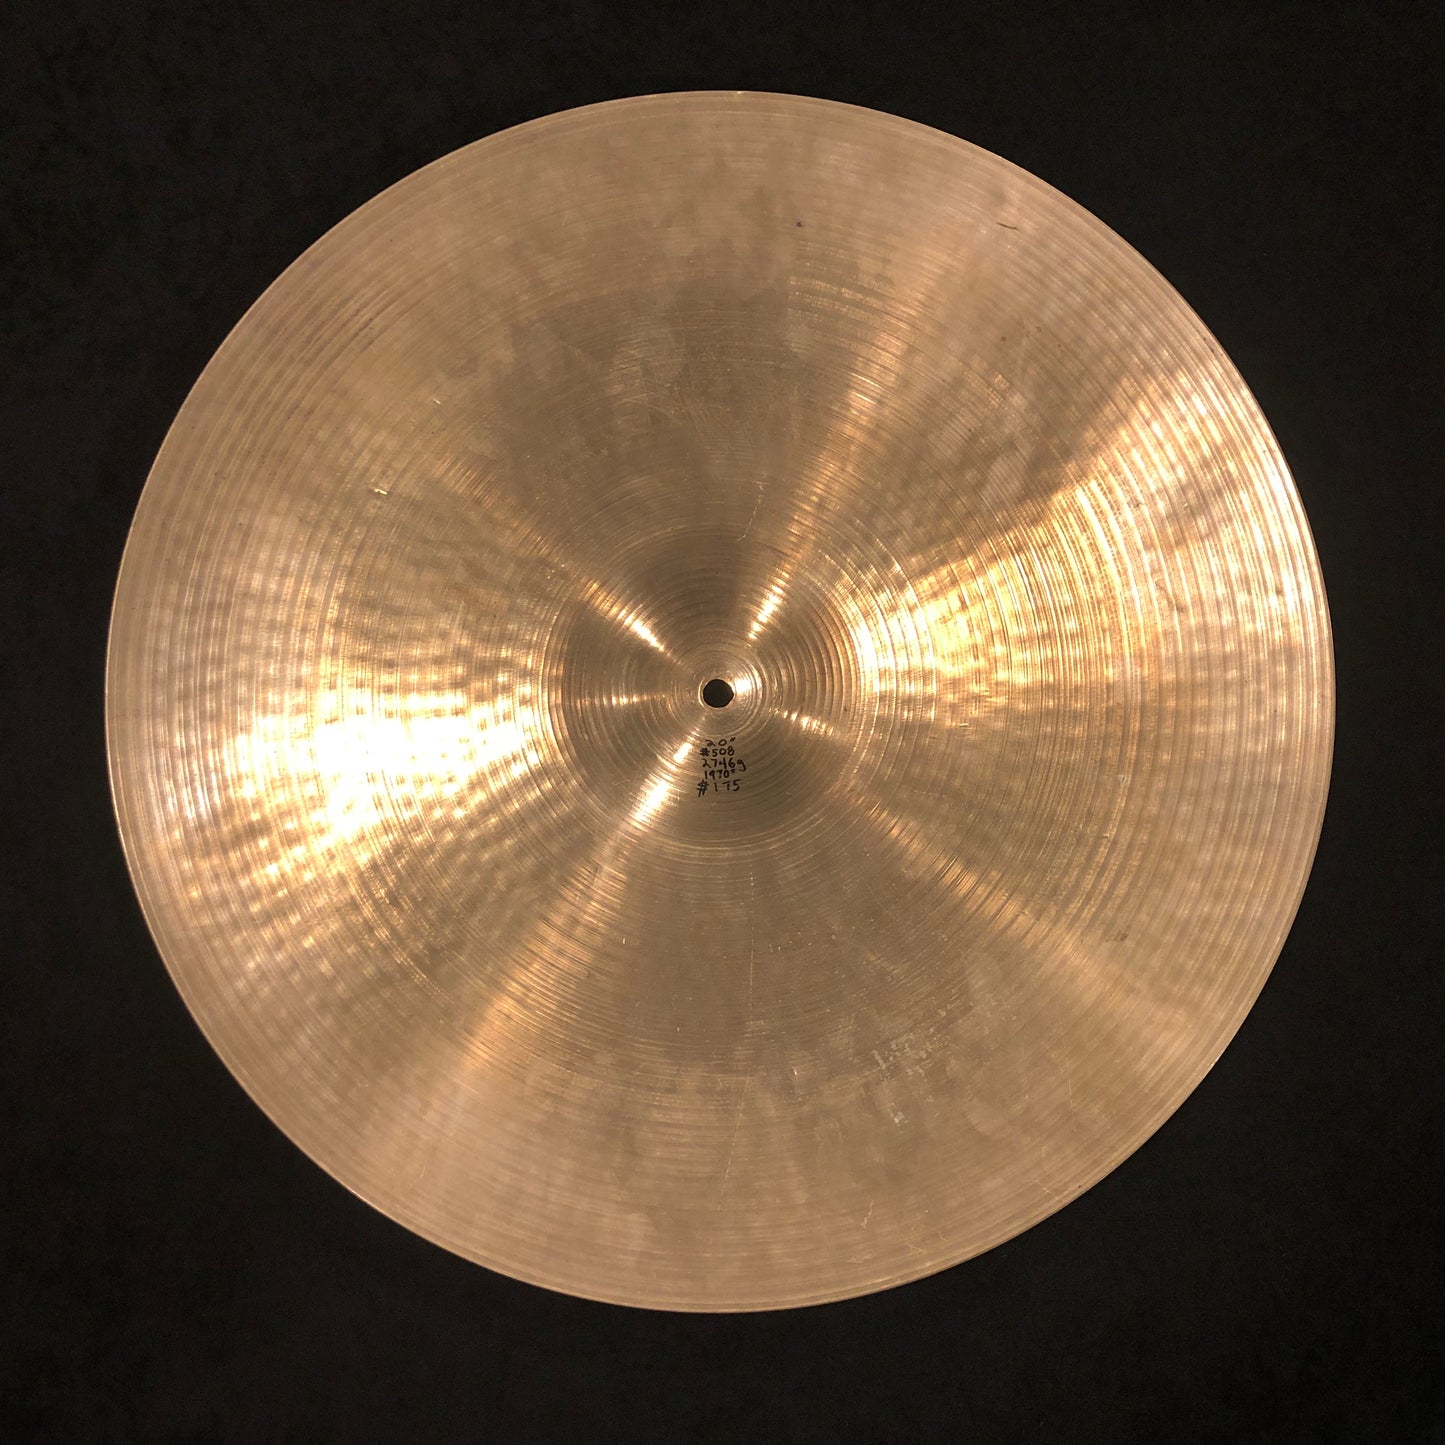 20" Zildjian A 1970s Ride Cymbal 2746g #508